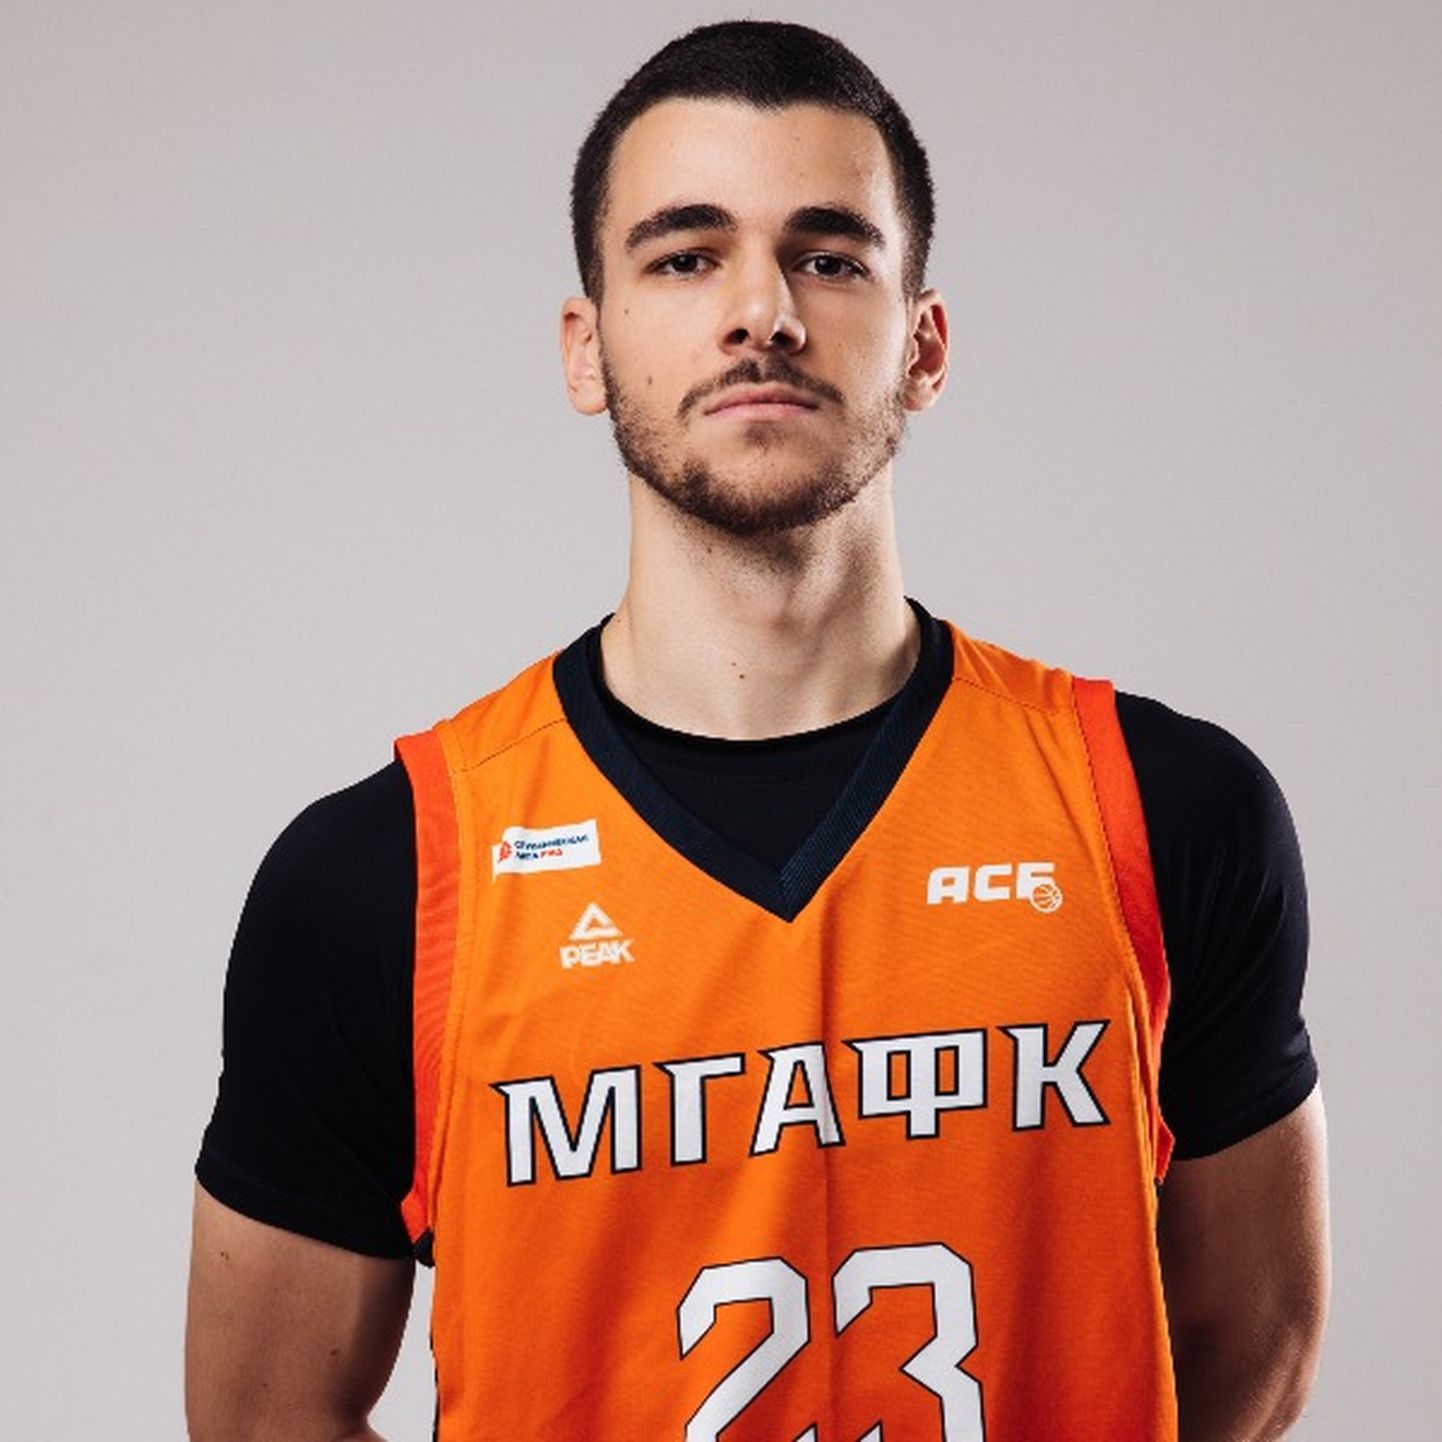 Даниэль Бейлинсон, эстонский игрок, выступающий за одну из команд российской студенческой лиги по баскетболу.